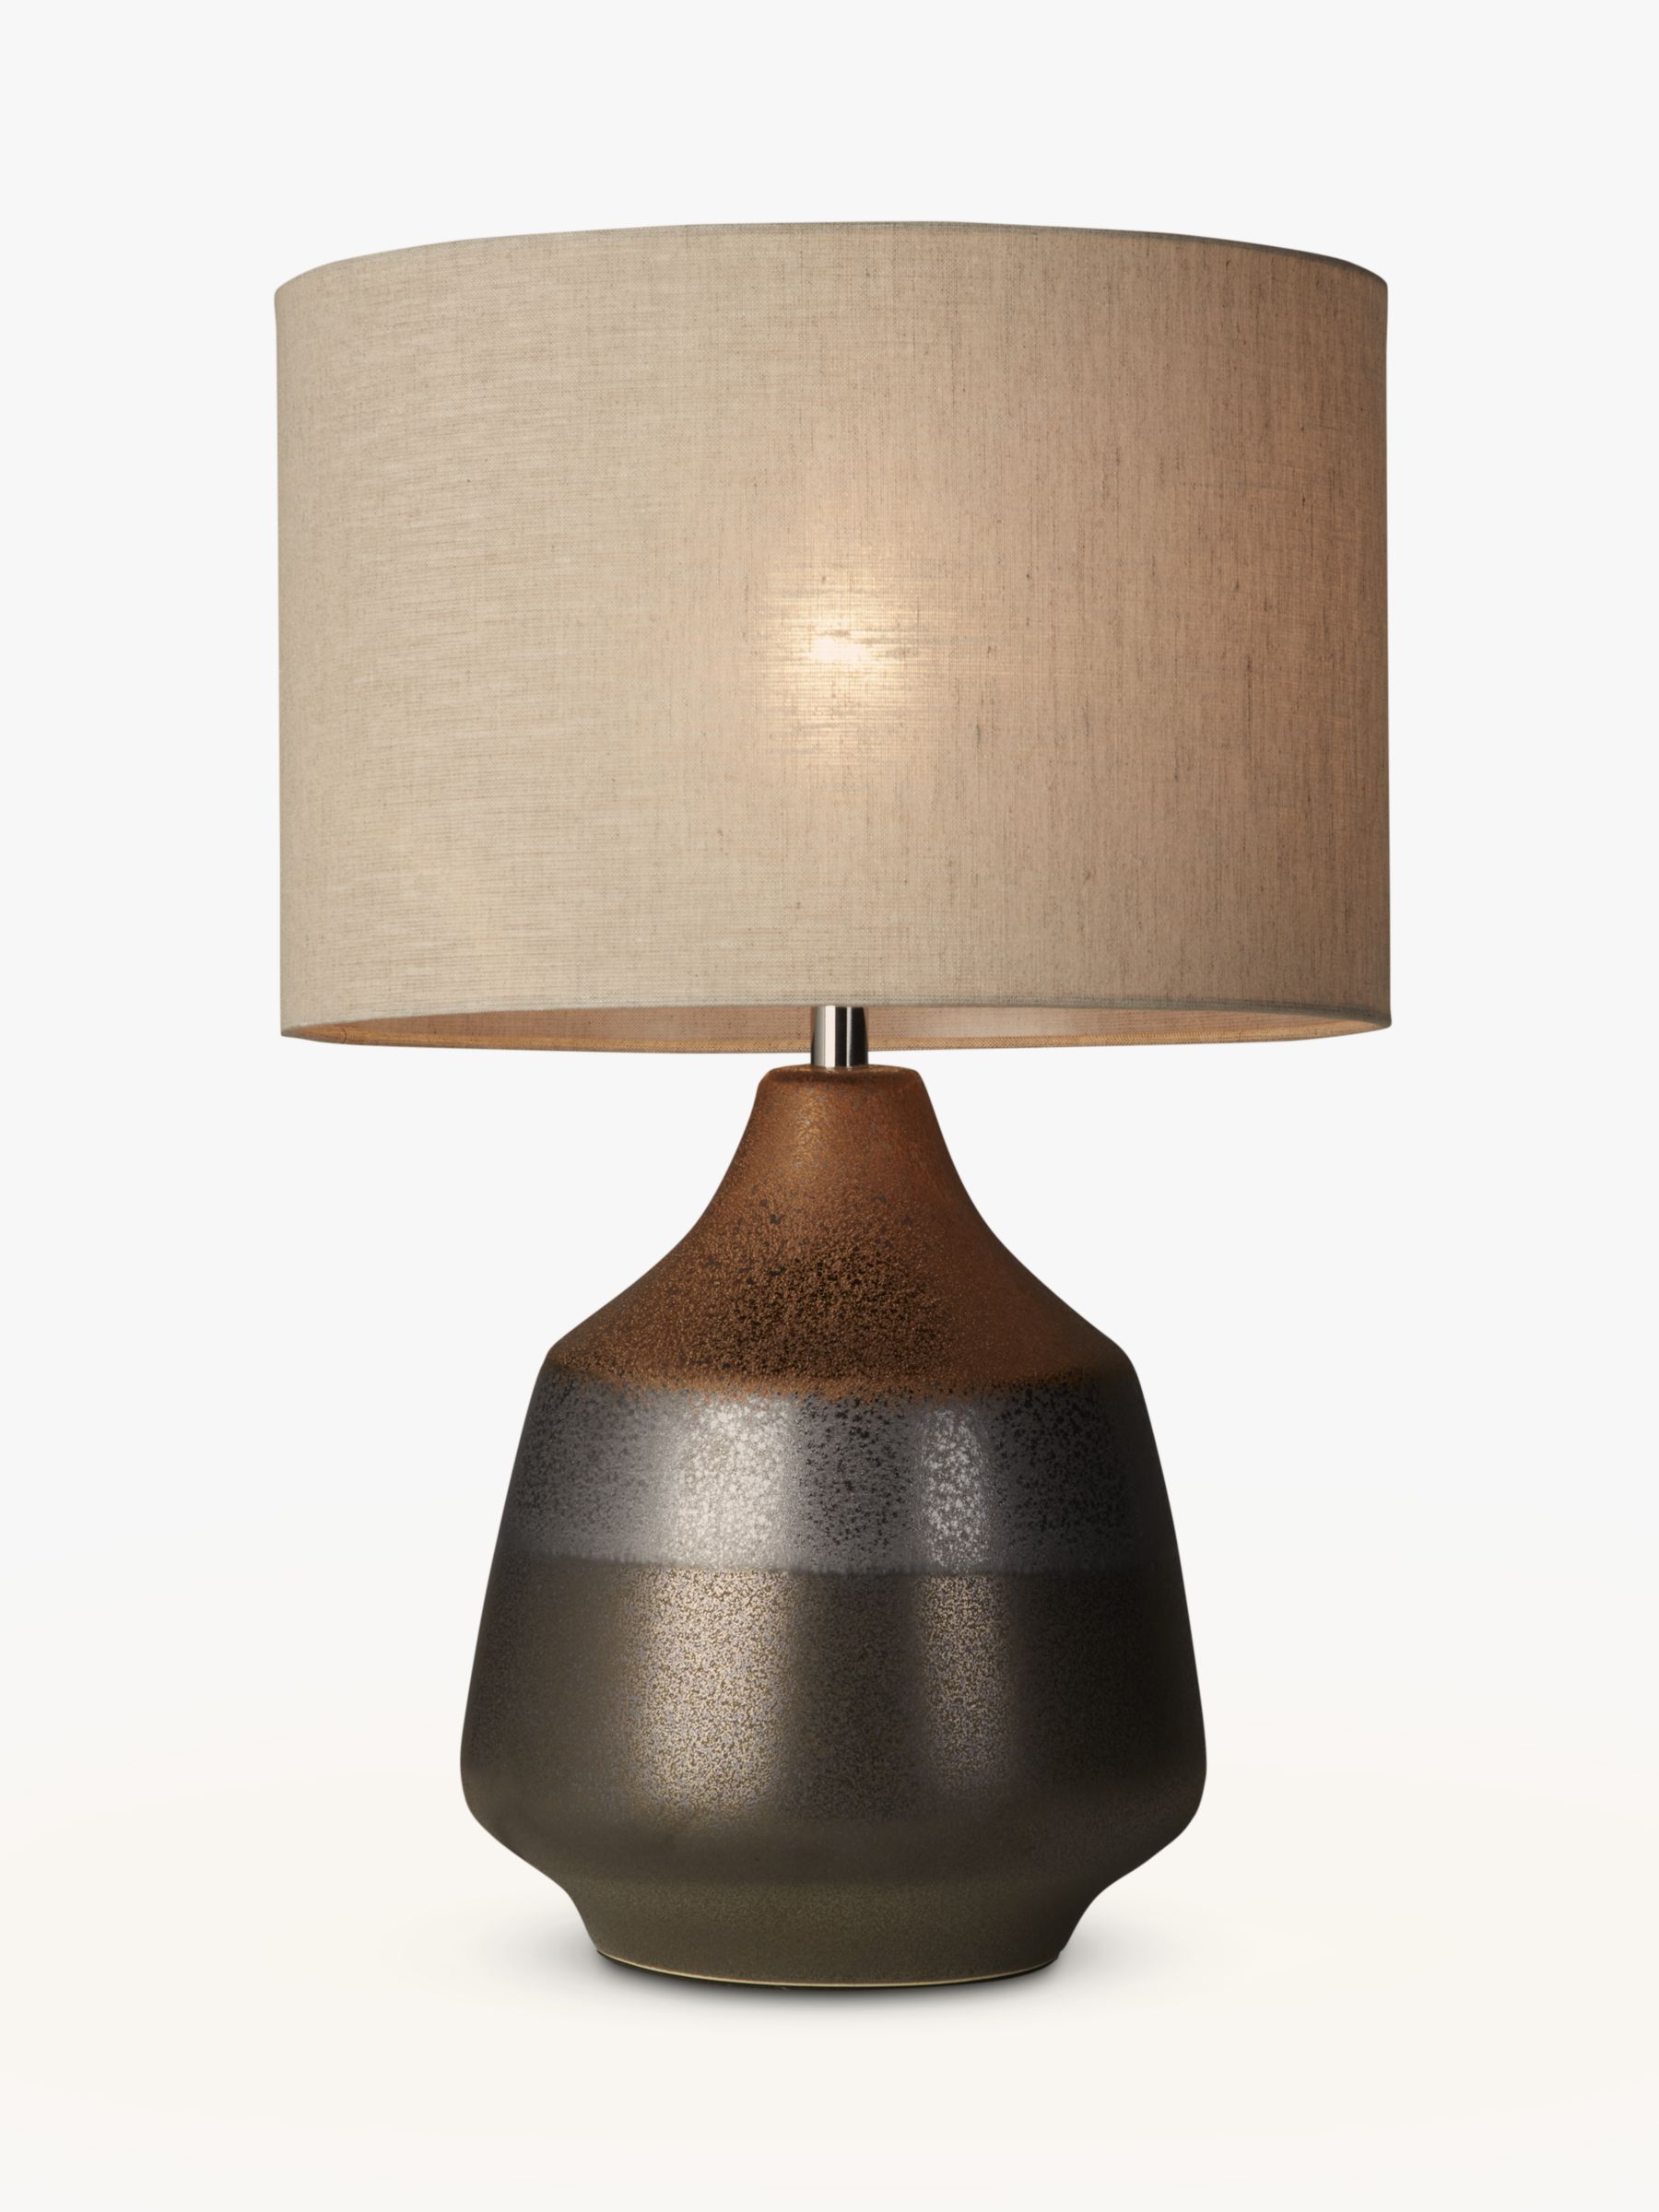 bronze bedside lamps